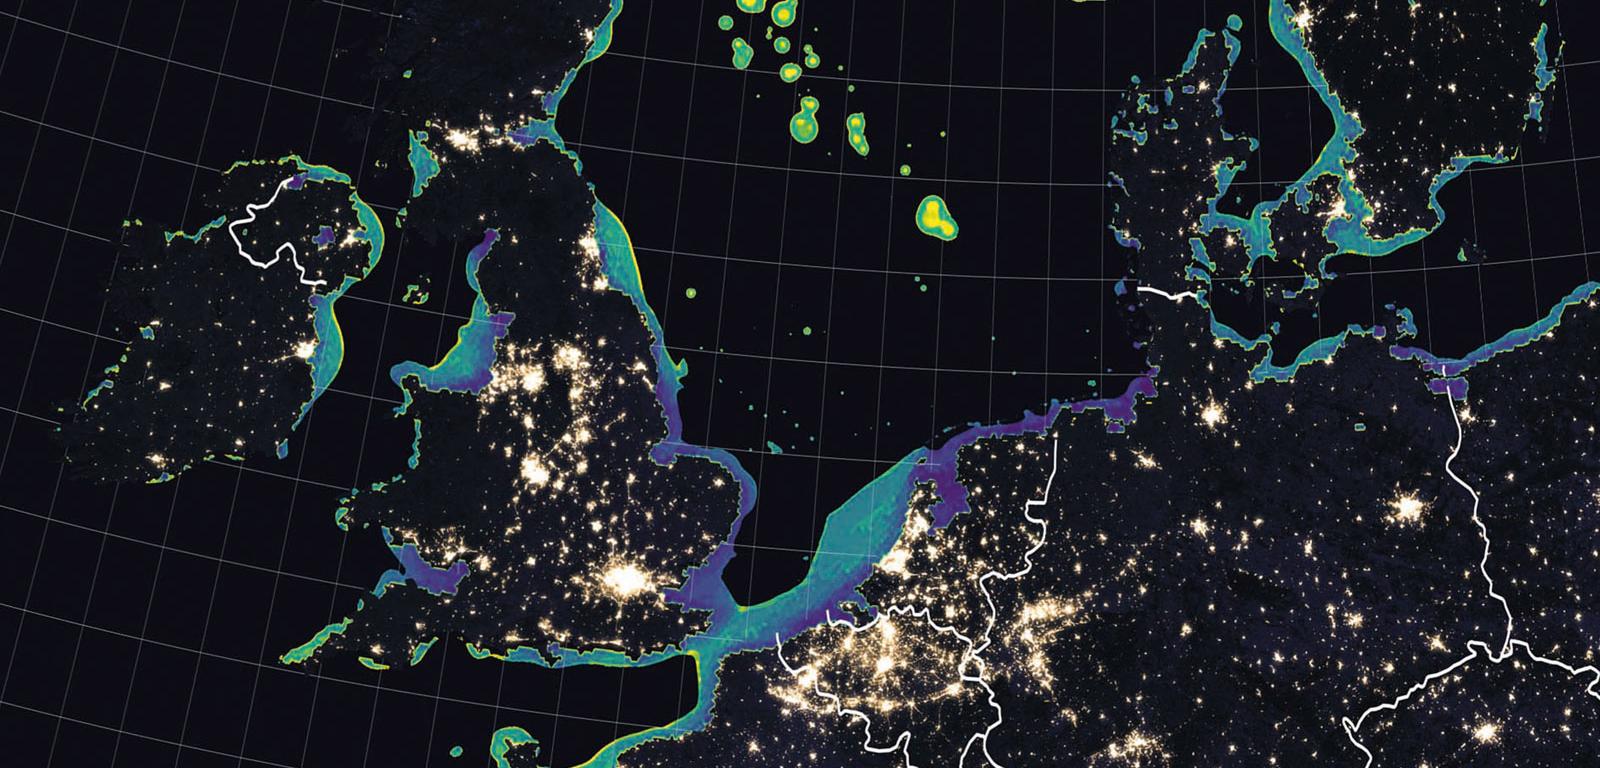 Platformy wiertnicze oraz farmy wiatrowe na Morzu Północnym świecą w nocy niczym wielkie latarnie. Poświata z nich dociera też do brzegów Wielkiej Brytanii (z lewej), Norwegii (z prawej) i innych krajów leżących nad tym akwenem.
Źródło: Joshua Stevens, T.J. Smith i in./Elementa: Science of the Anthropocene.